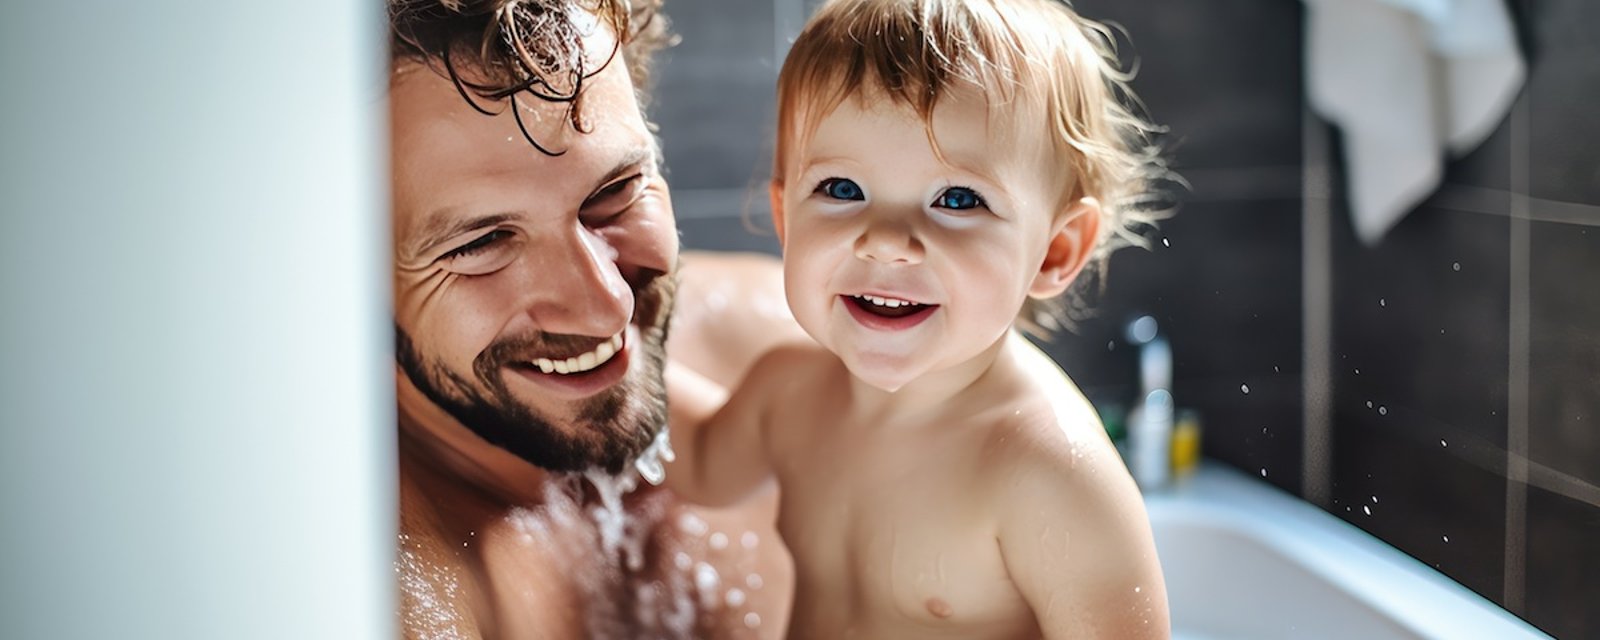 Quand les parents devraient-ils arrêter de prendre un bain avec leur enfant?